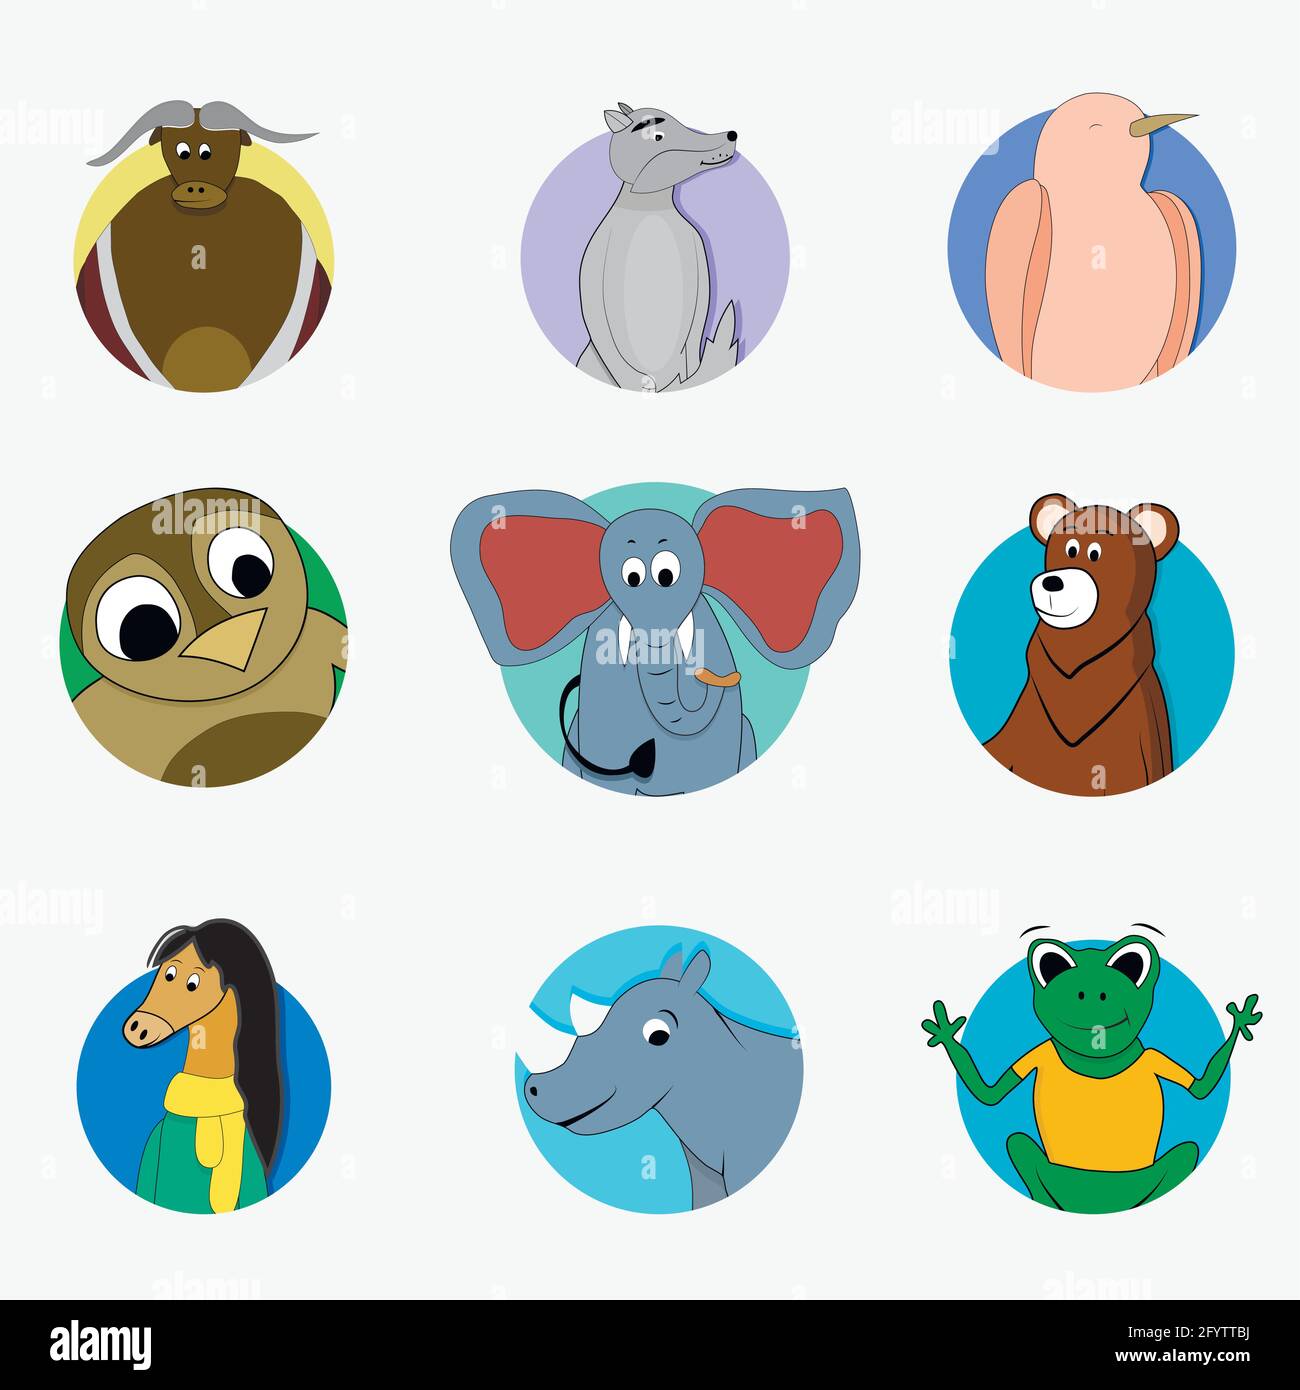 Aufkleber lustige Avatar Maskottchen, singvögel und Eule, Bär und Elefant, wilde Kreatur Stier und Wolf, Cartoon Avatar Zoo. Vektorgrafik Stock Vektor